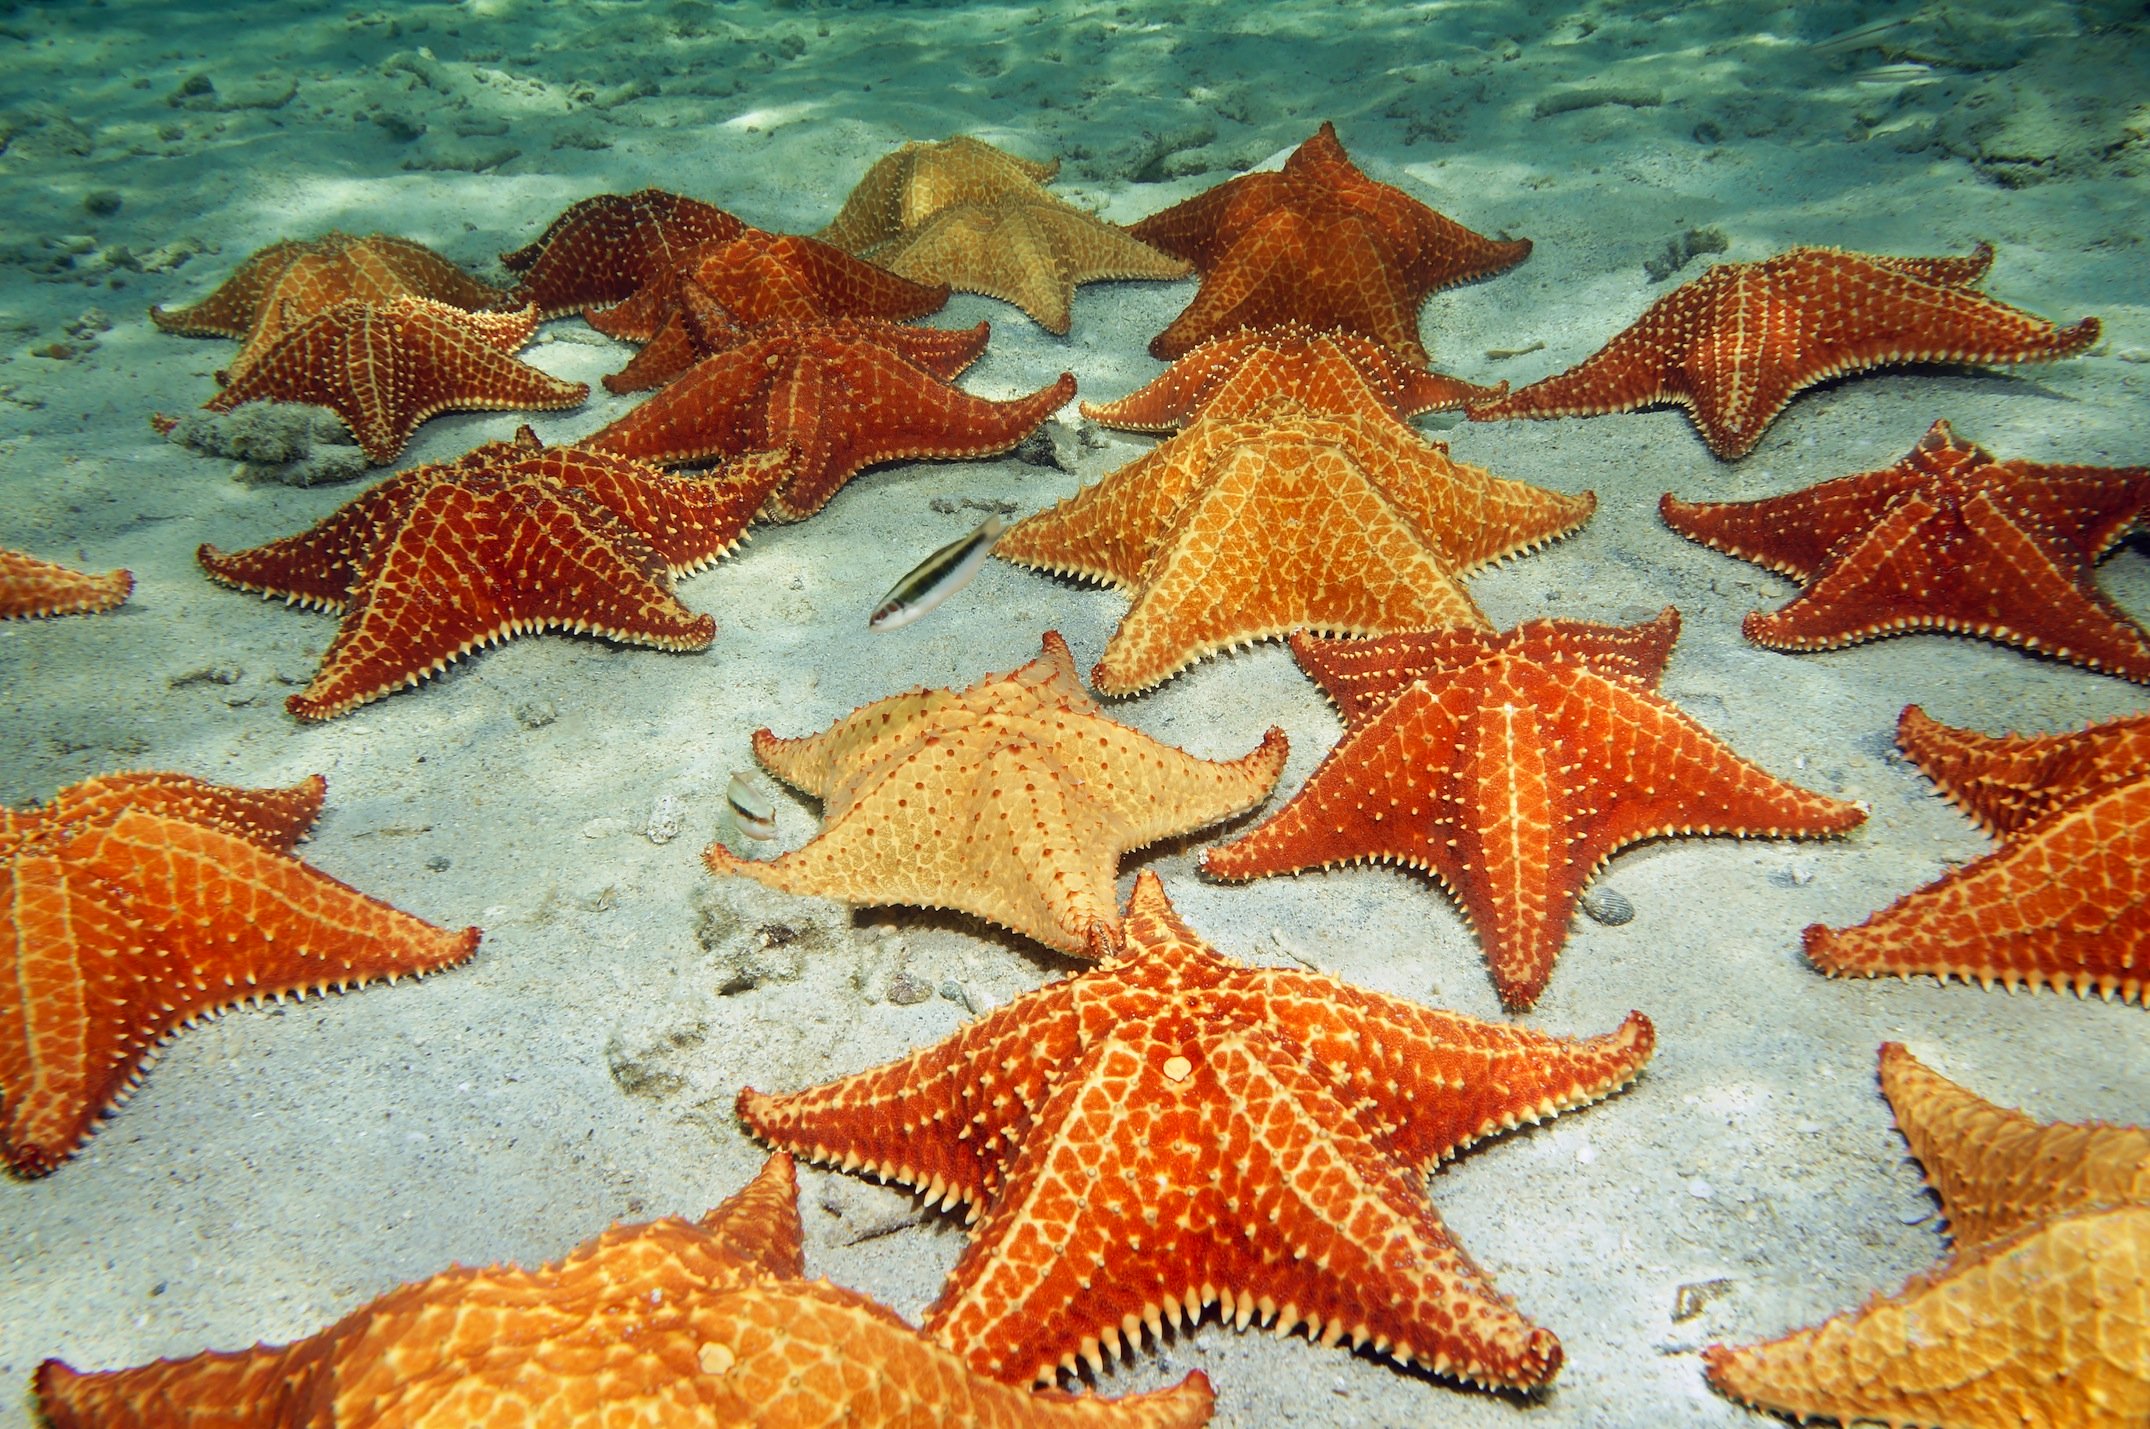 Star Fish (Sea Star) story — Steemit